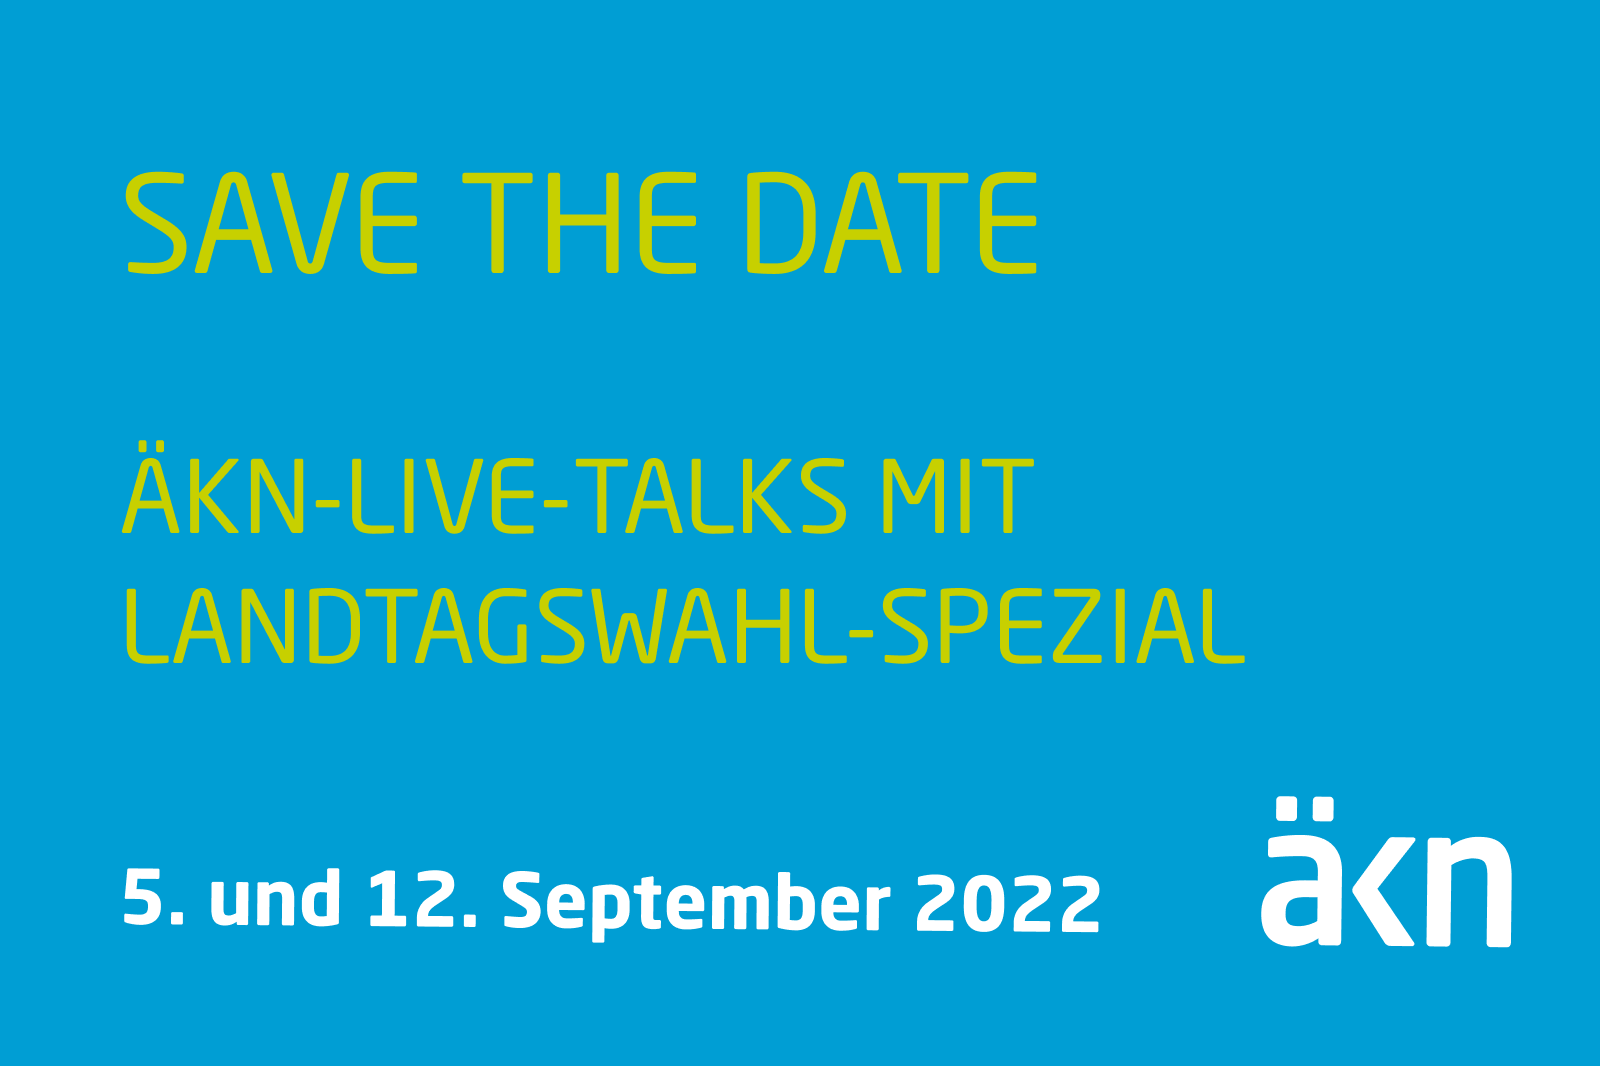 Save the date: ÄKn-Live-Talks mit Landtagswahl-Spezial am 5. und 12. September 2022.